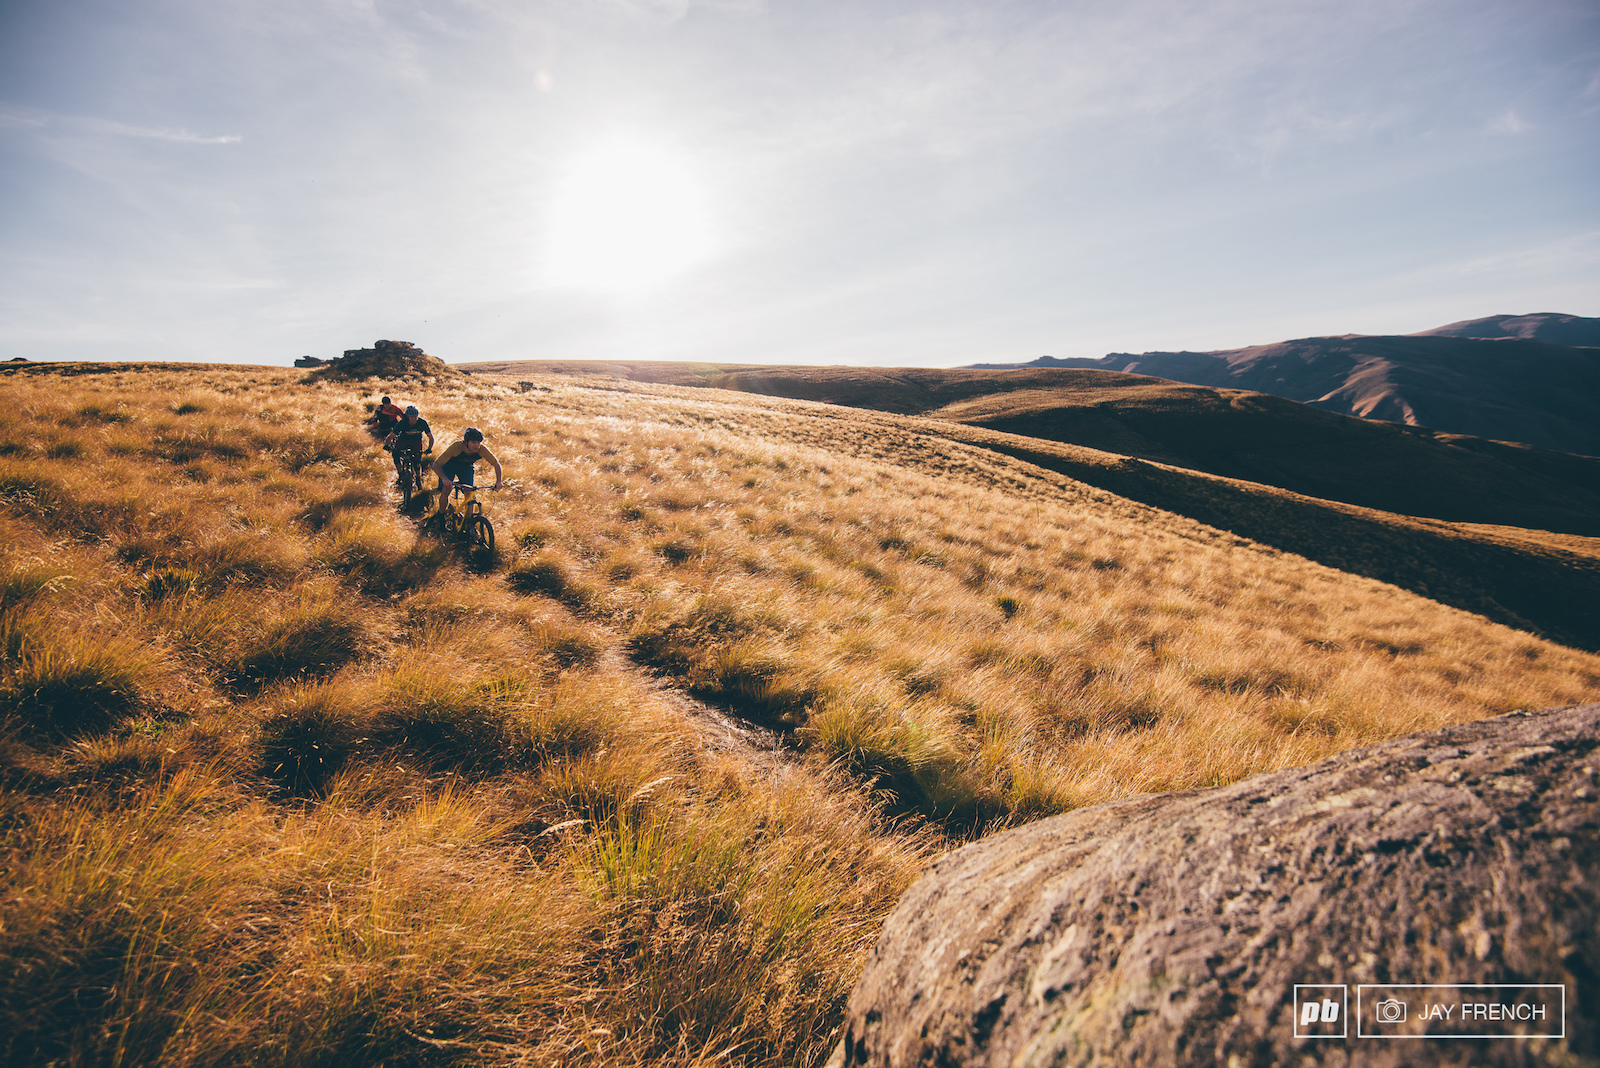 Блог компании Триал-Спорт: Norco: Осенние приключения на южном острове Новой Зеландии